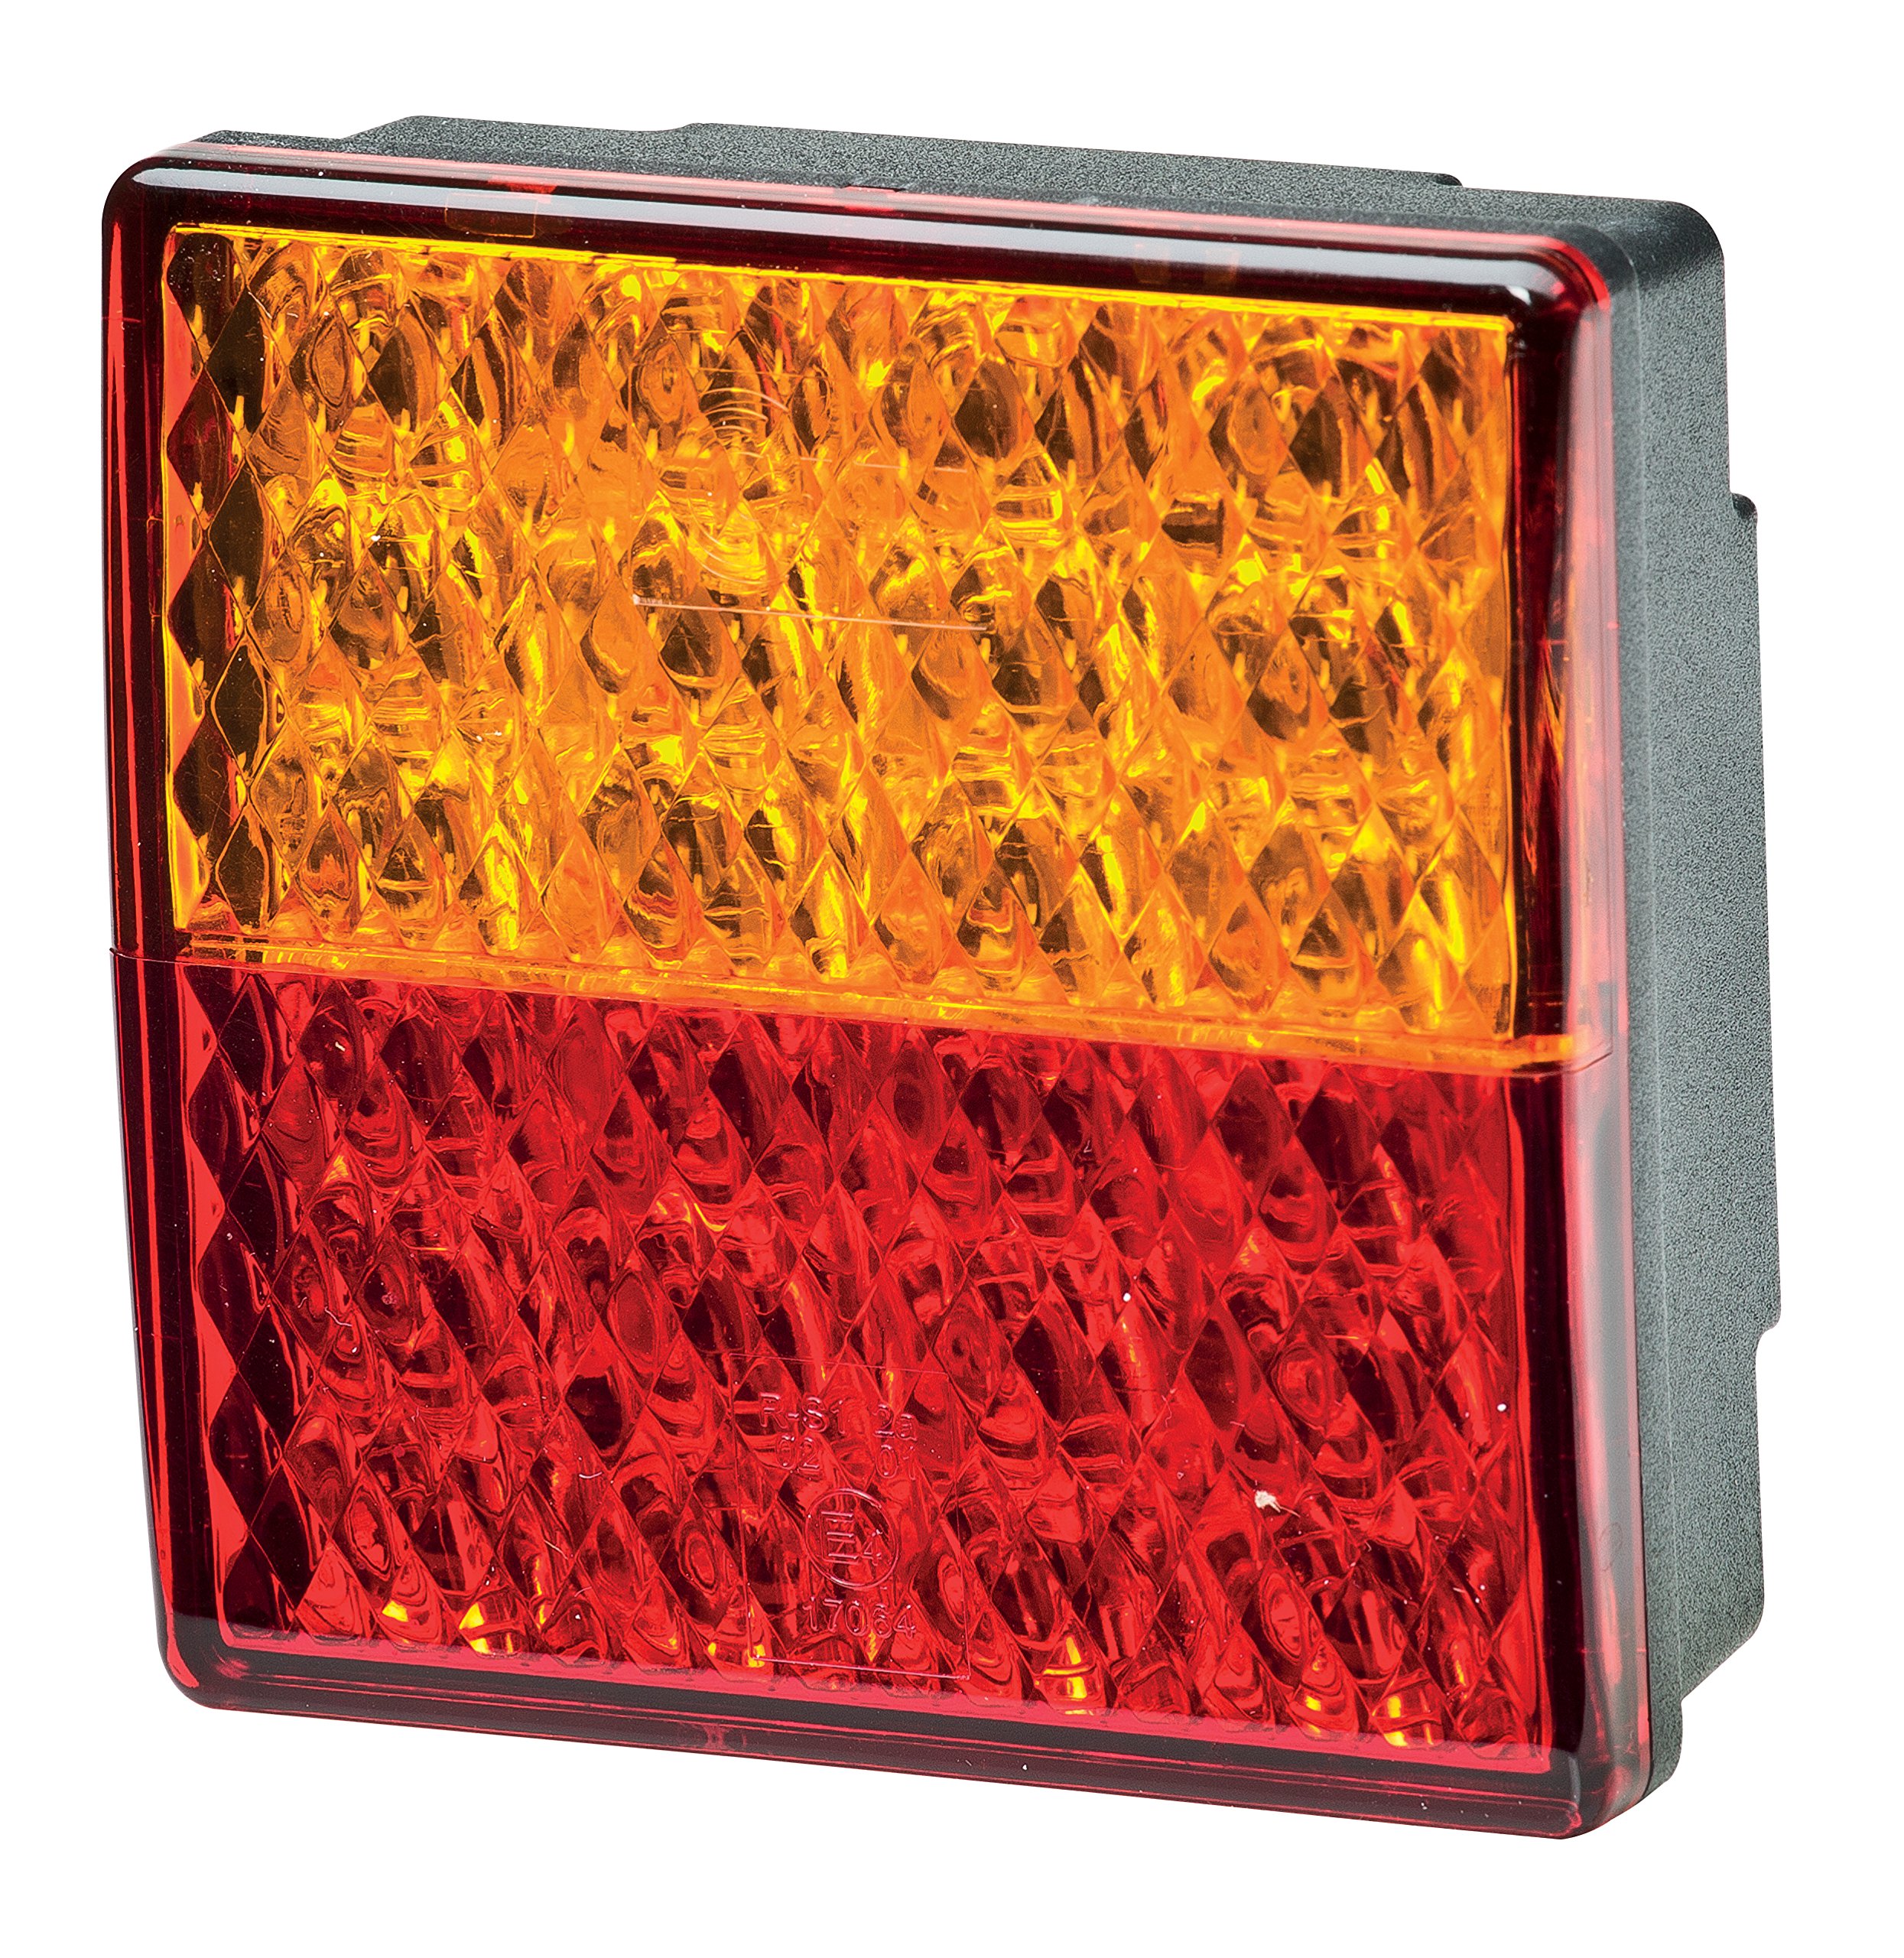 HELLA - Heckleuchte - Valuefit - LED - 12V - Anbau/geschraubt - Lichtscheibenfarbe: rot/gelb - Stecker: offene Kabelenden - rechts/links - Menge: 1 - 2SD 357 029-001